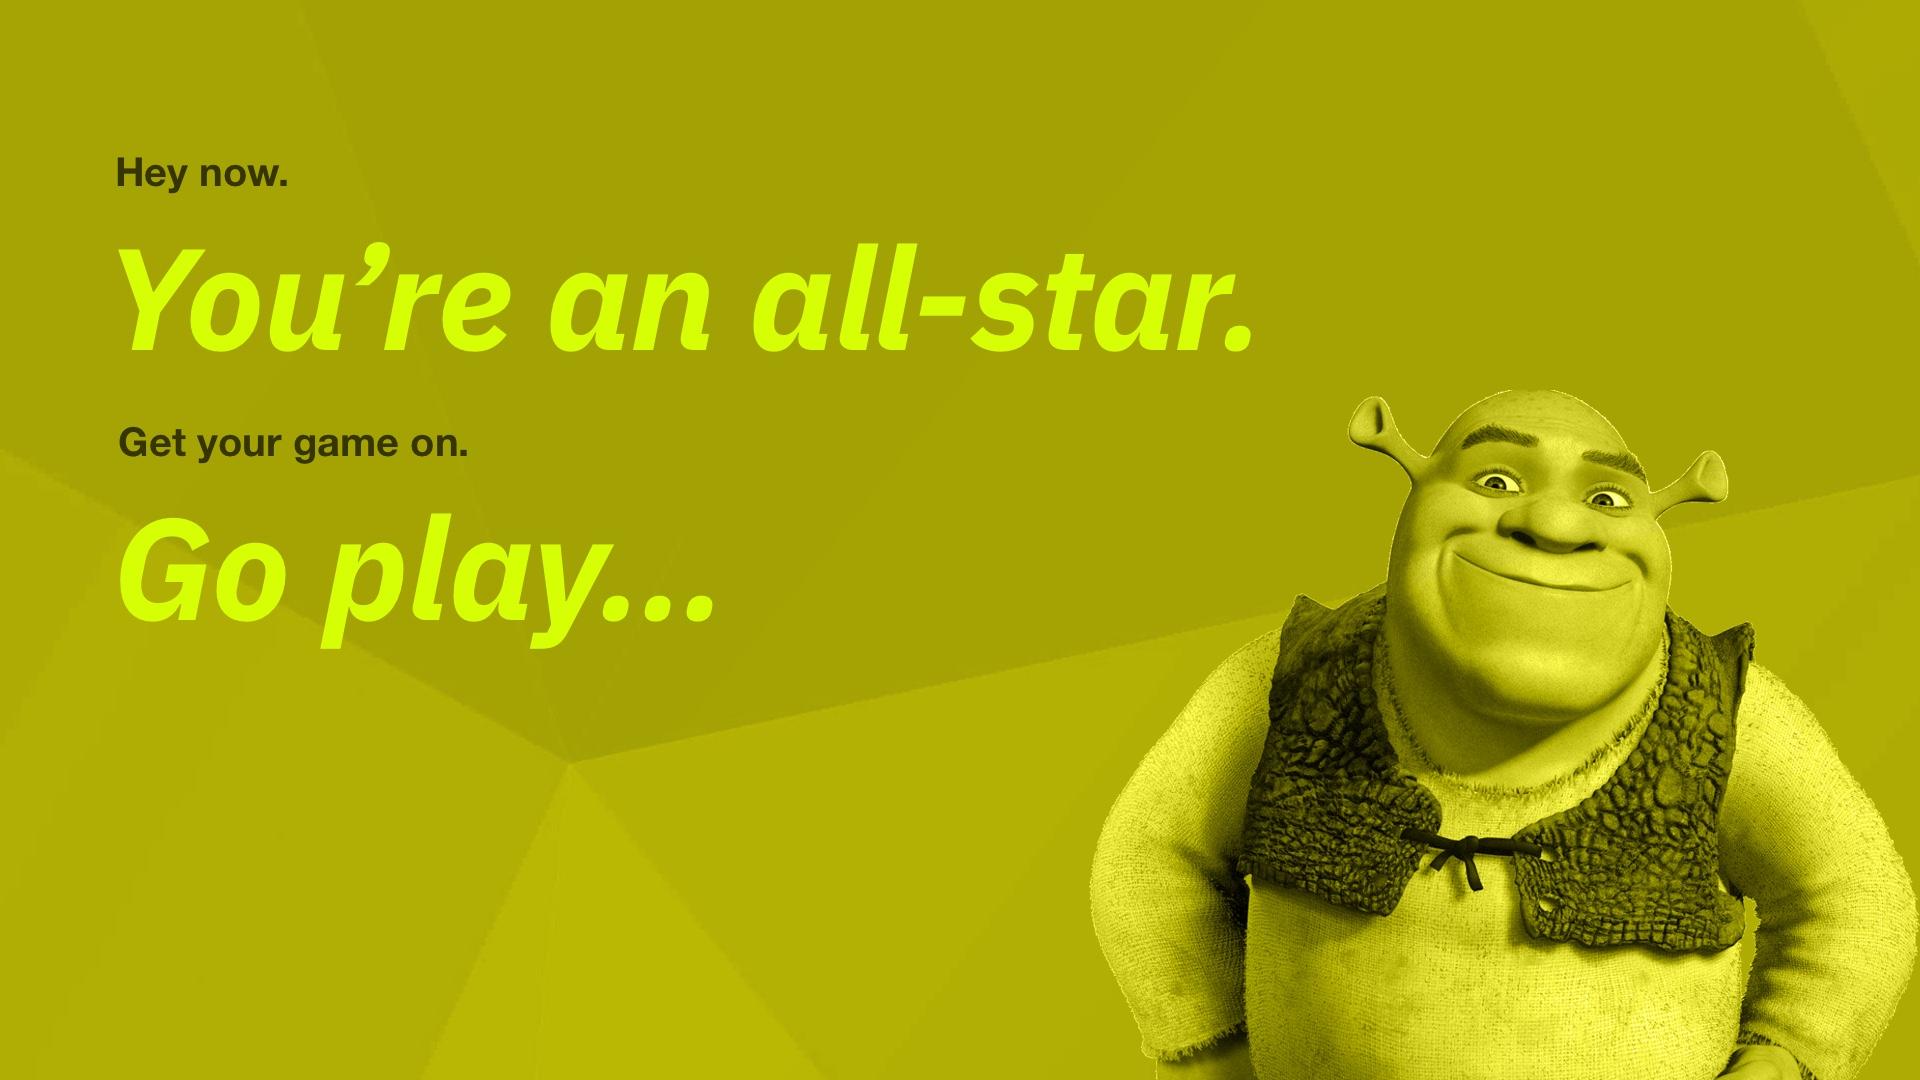 24 Shrek Ideas Shrek Shrek Quotes Movie Quotes - vrogue.co